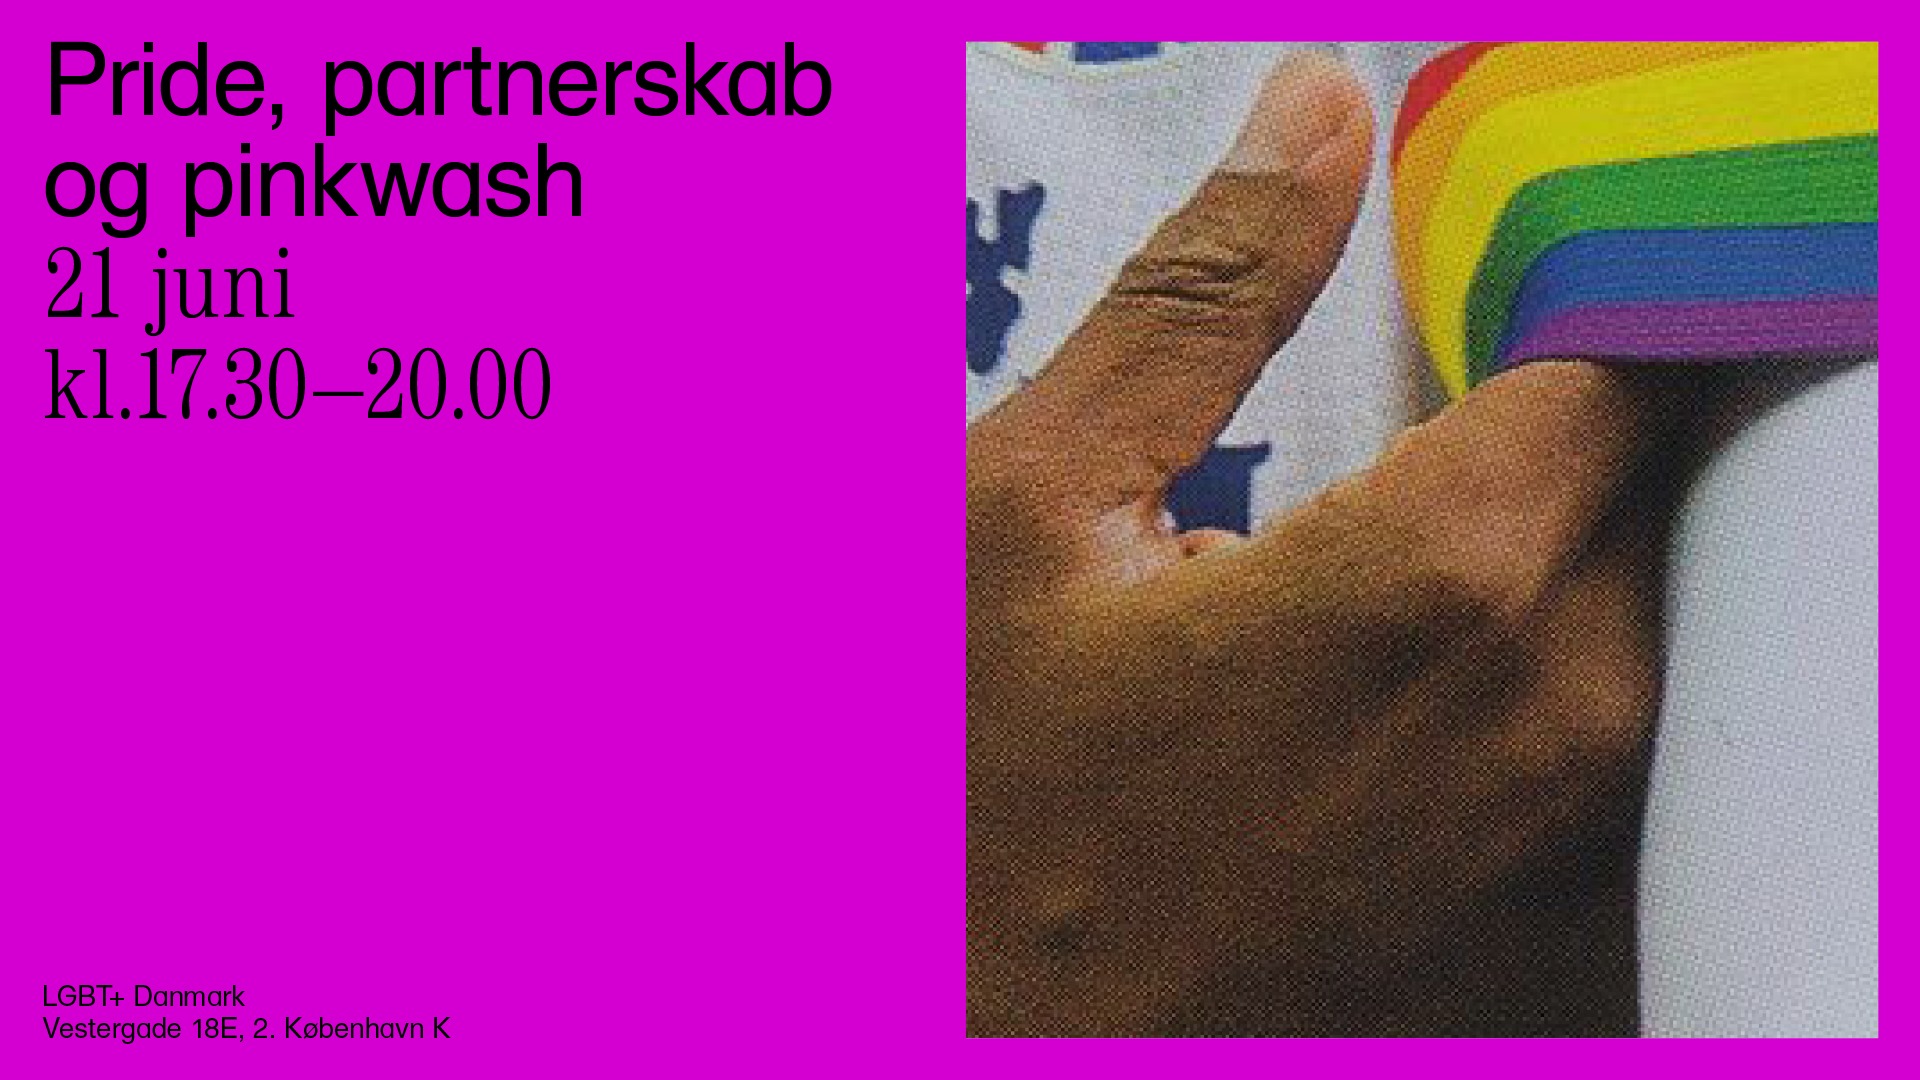 Event: Pride, partnerskaber og pinkwash